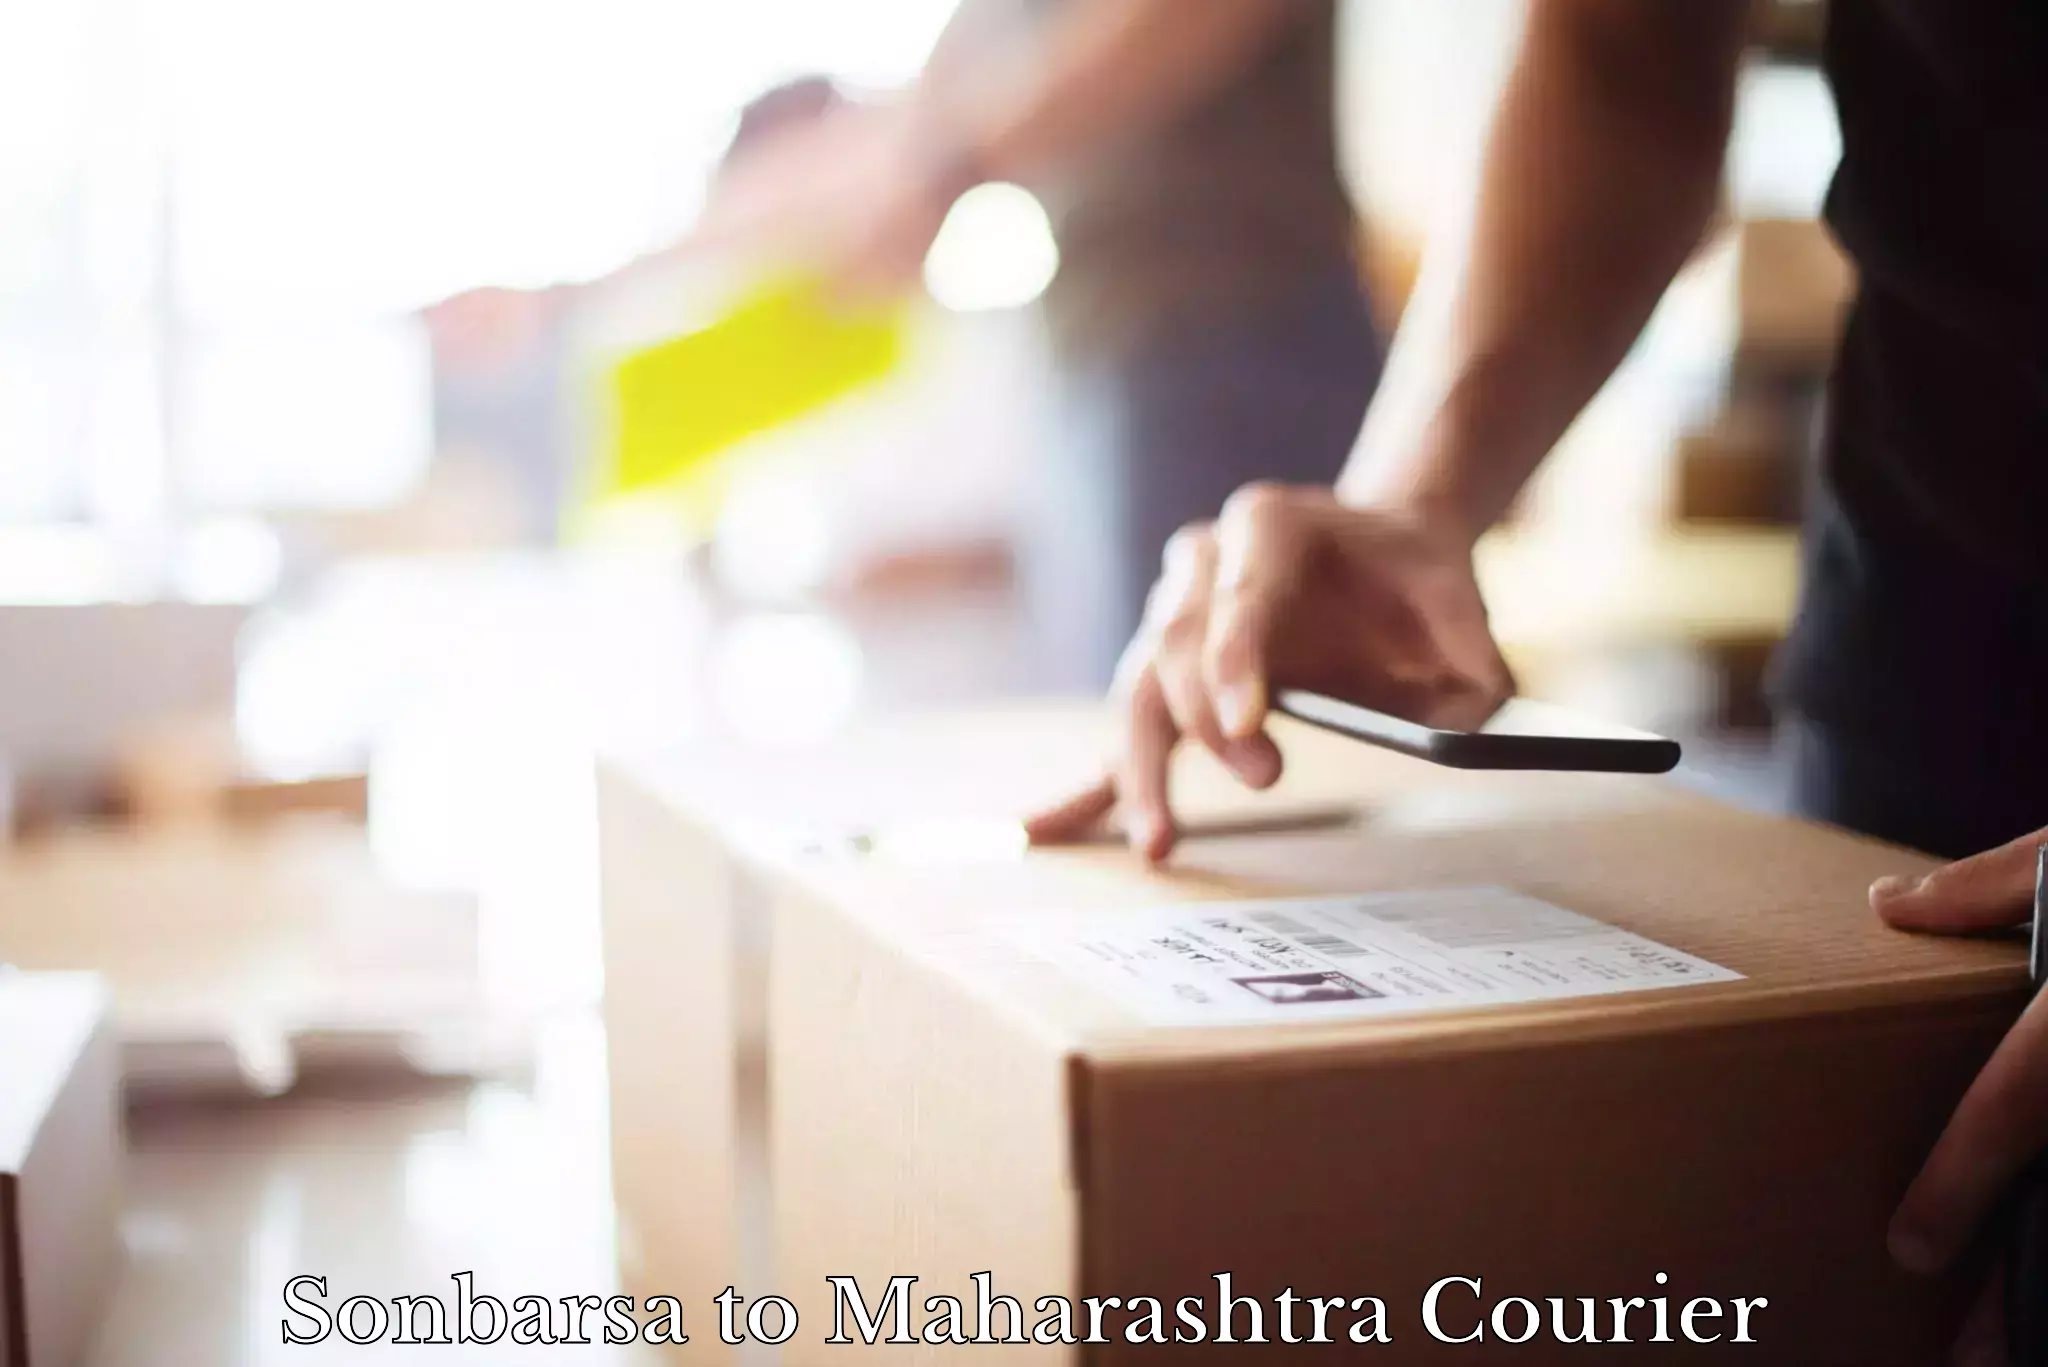 Professional courier handling Sonbarsa to Tata Institute of Social Sciences Mumbai